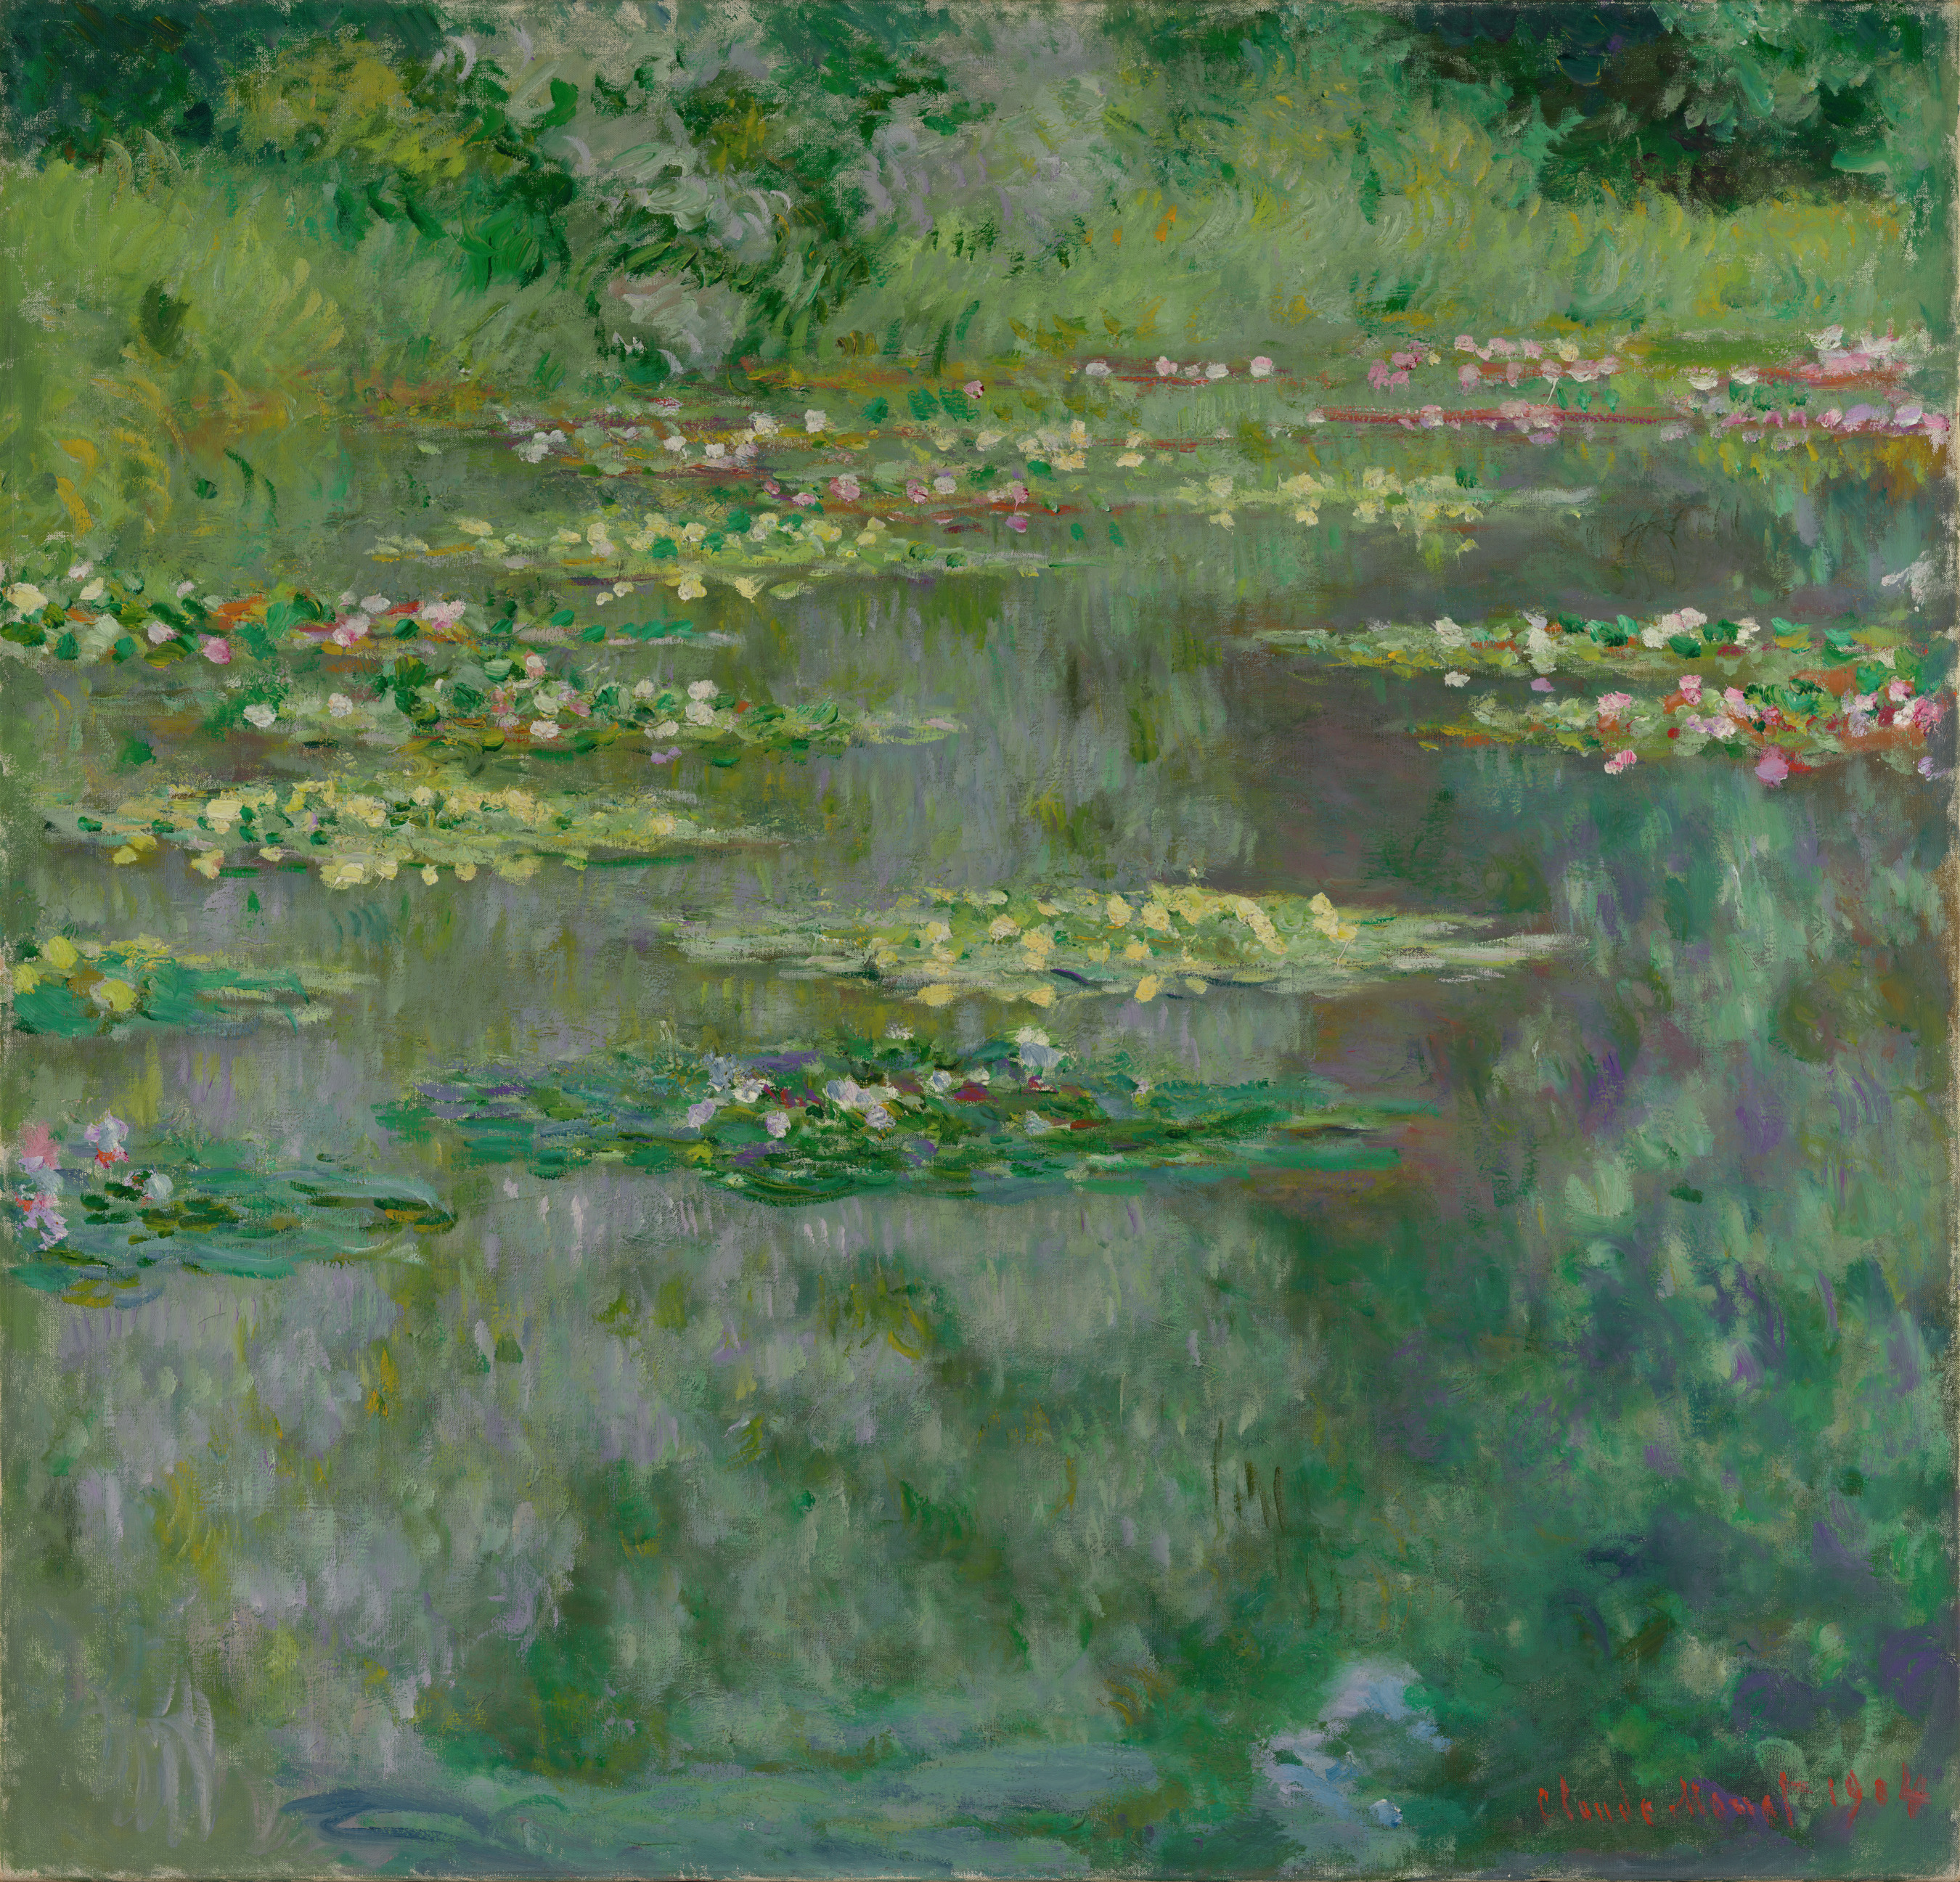 Nuferi sau iazul cu nuferi (Nympheas) by Claude Monet - 1904 - 87.94 x 91.44 cm 